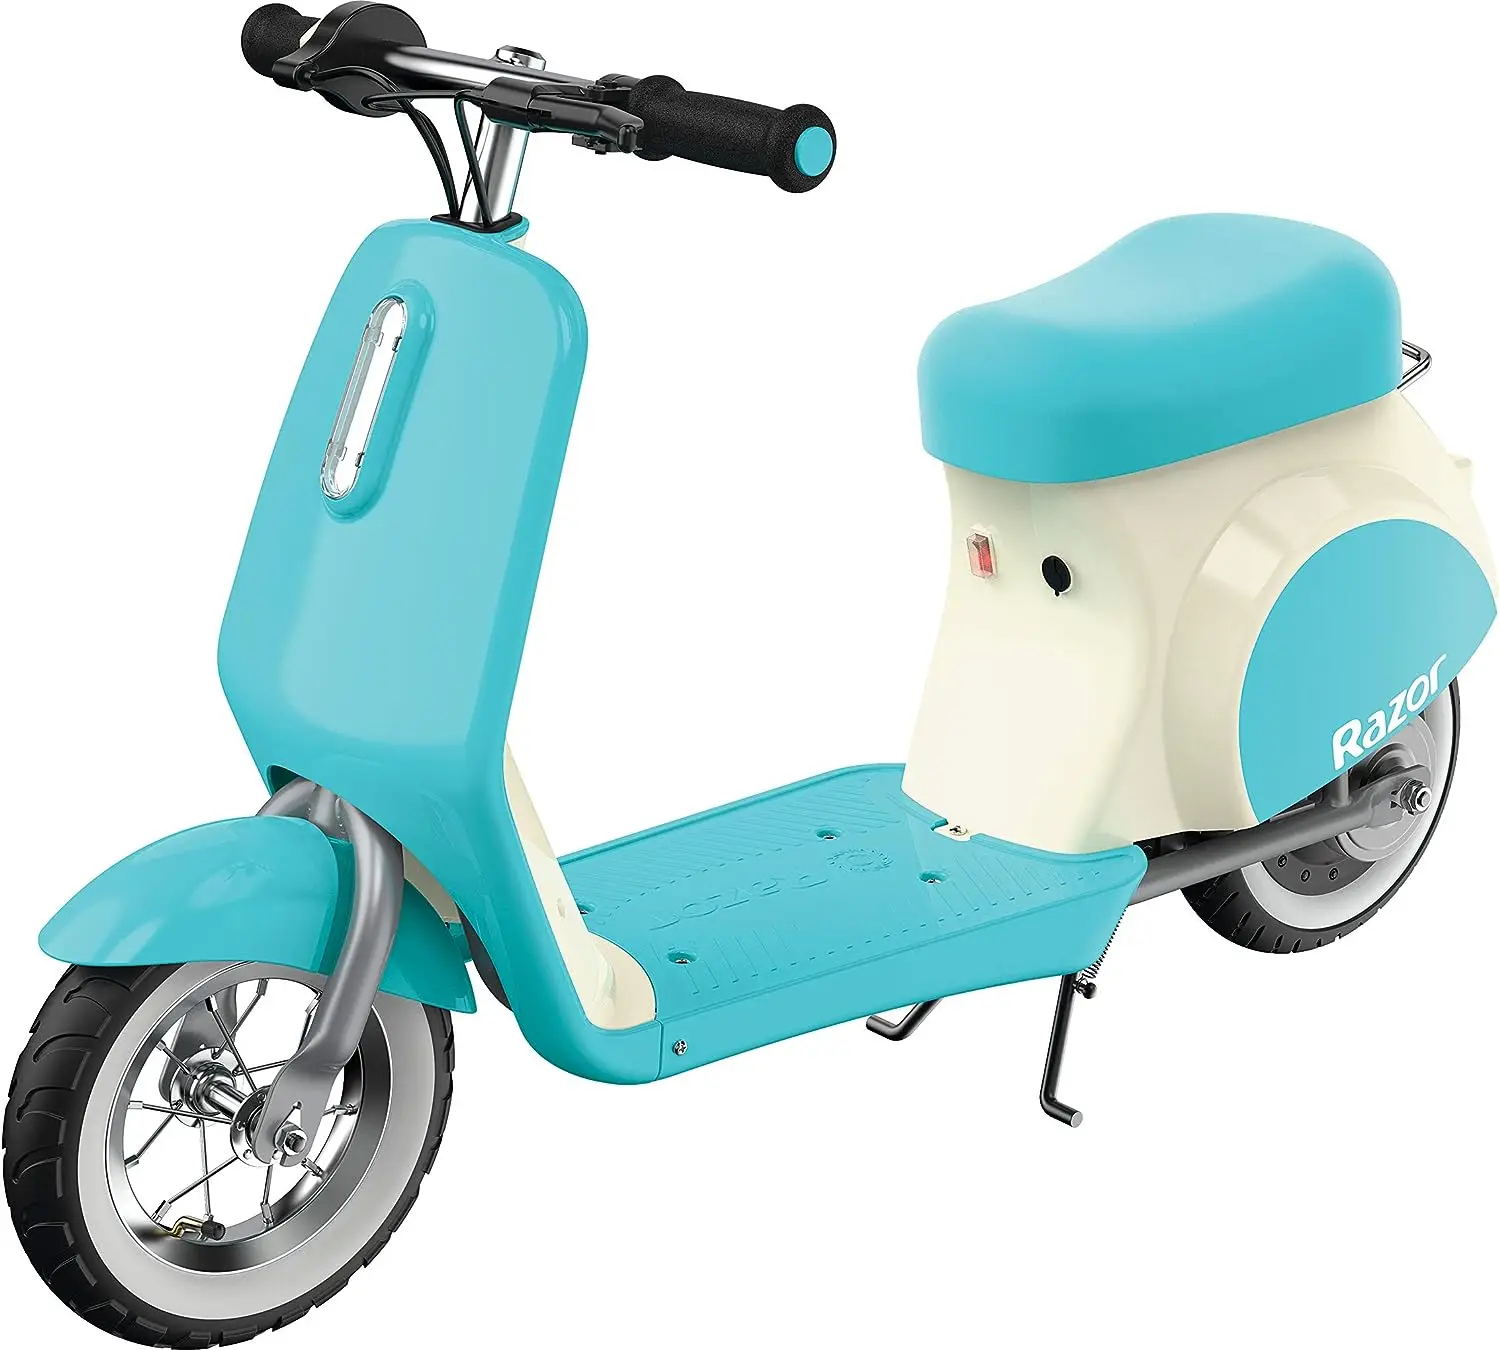 

Миниатюрный скутер Mod Petite в европейском стиле для возраста 7 +, Винтажный дизайн, мотор с приводом, пневматические белые шины, до 4 лет